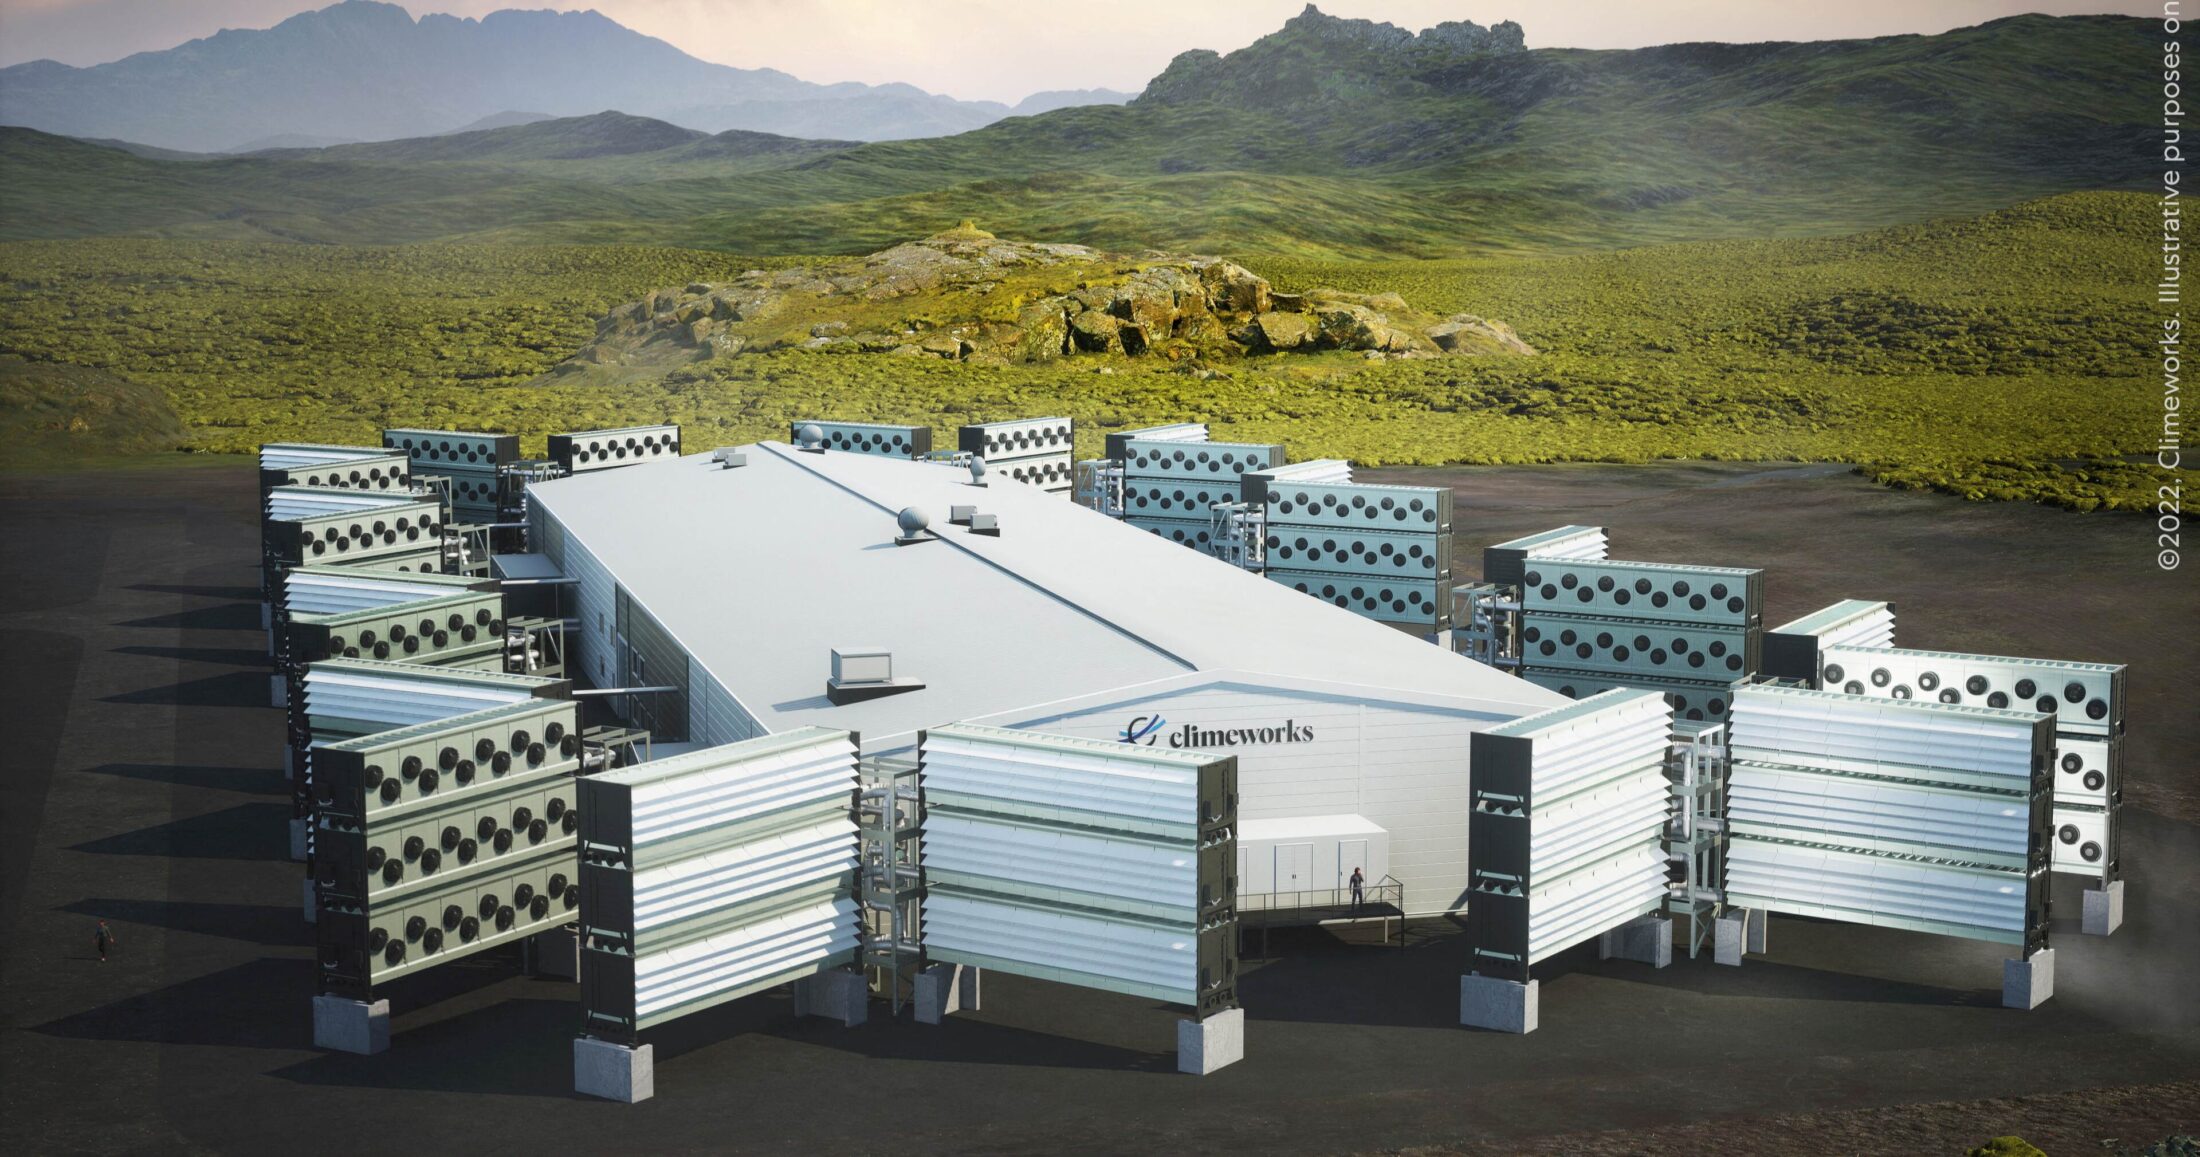 Η μονάδα Mammoth DAC έχει τη δυνατότητα δέσμευσης 36.000 μετρικών τόνων CO2 ετησίως